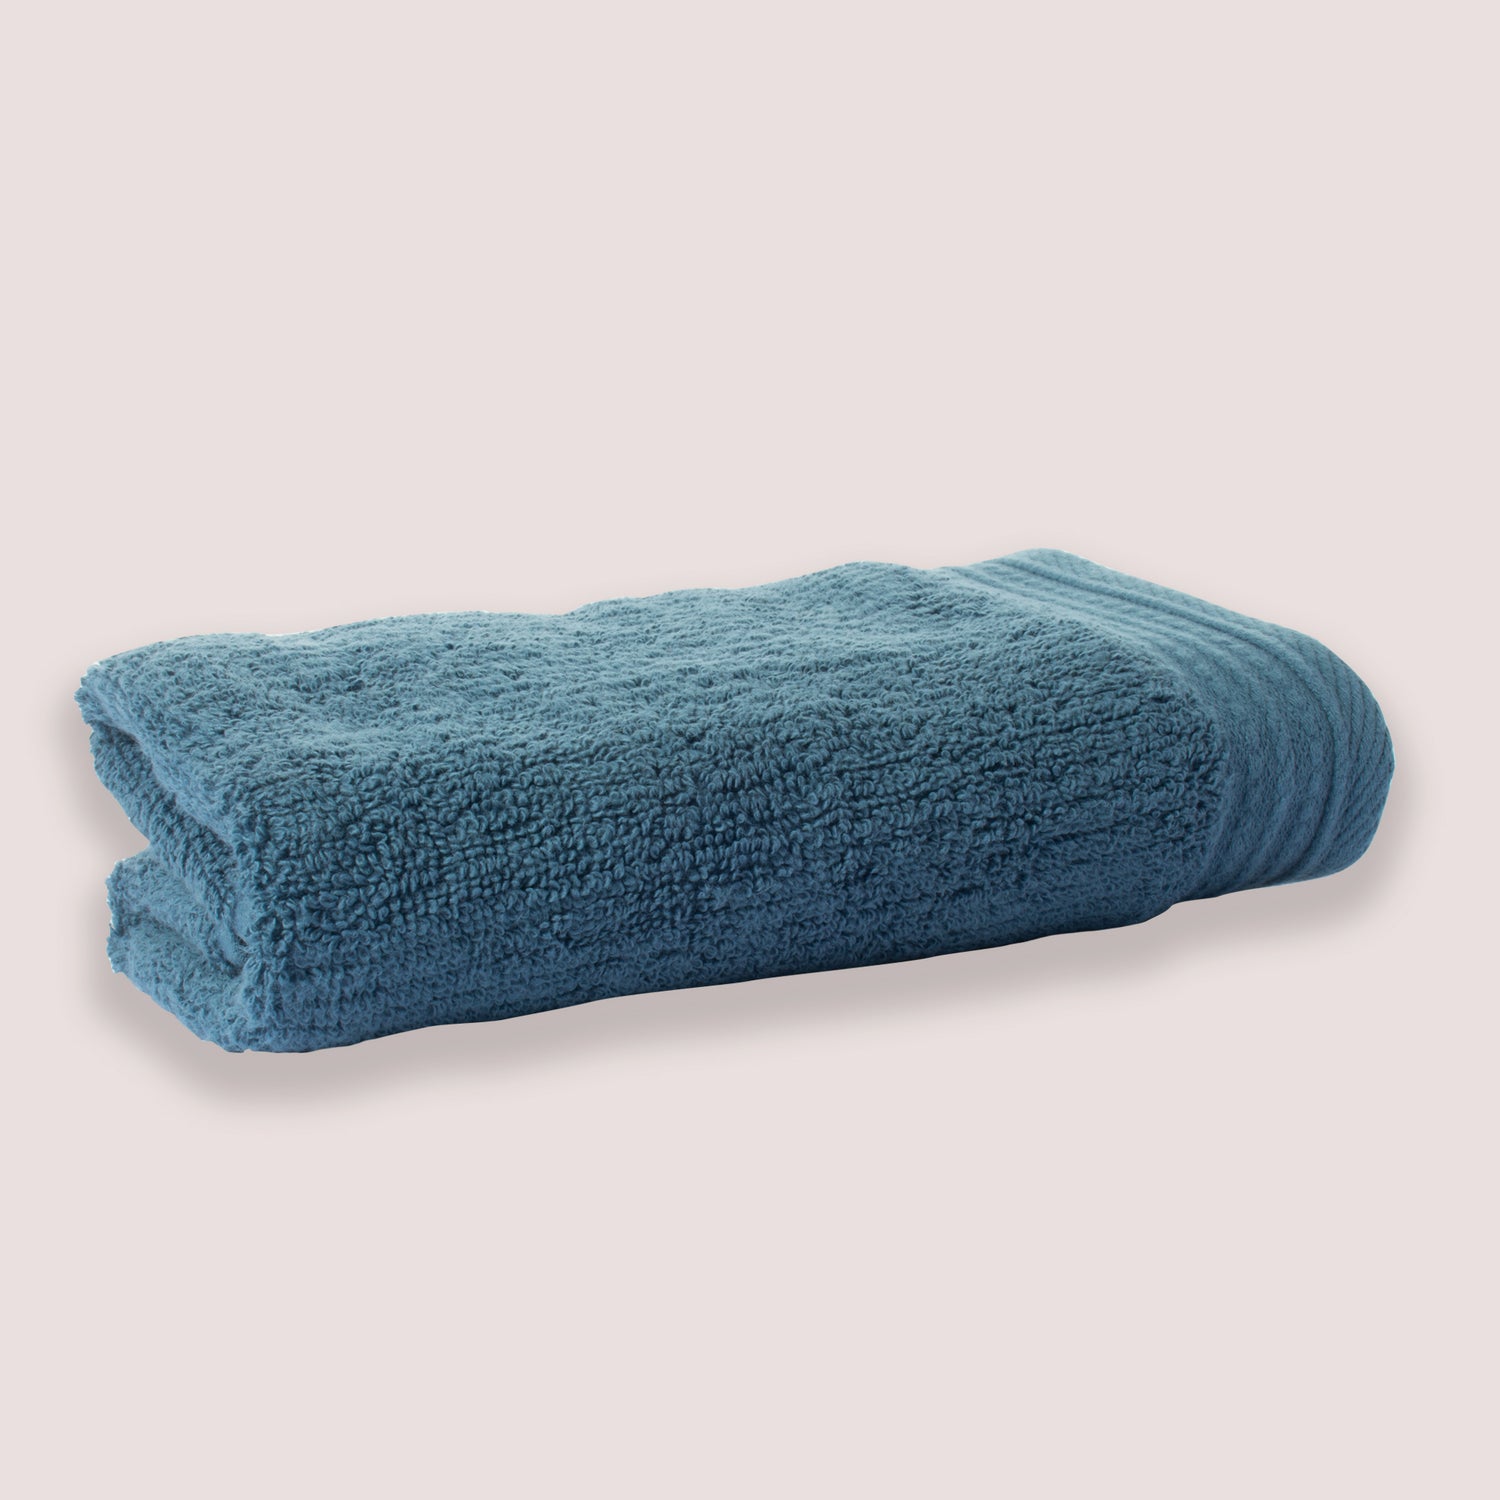 Toalla de baño Imperial 100% algodón 450 gramos azul báltico